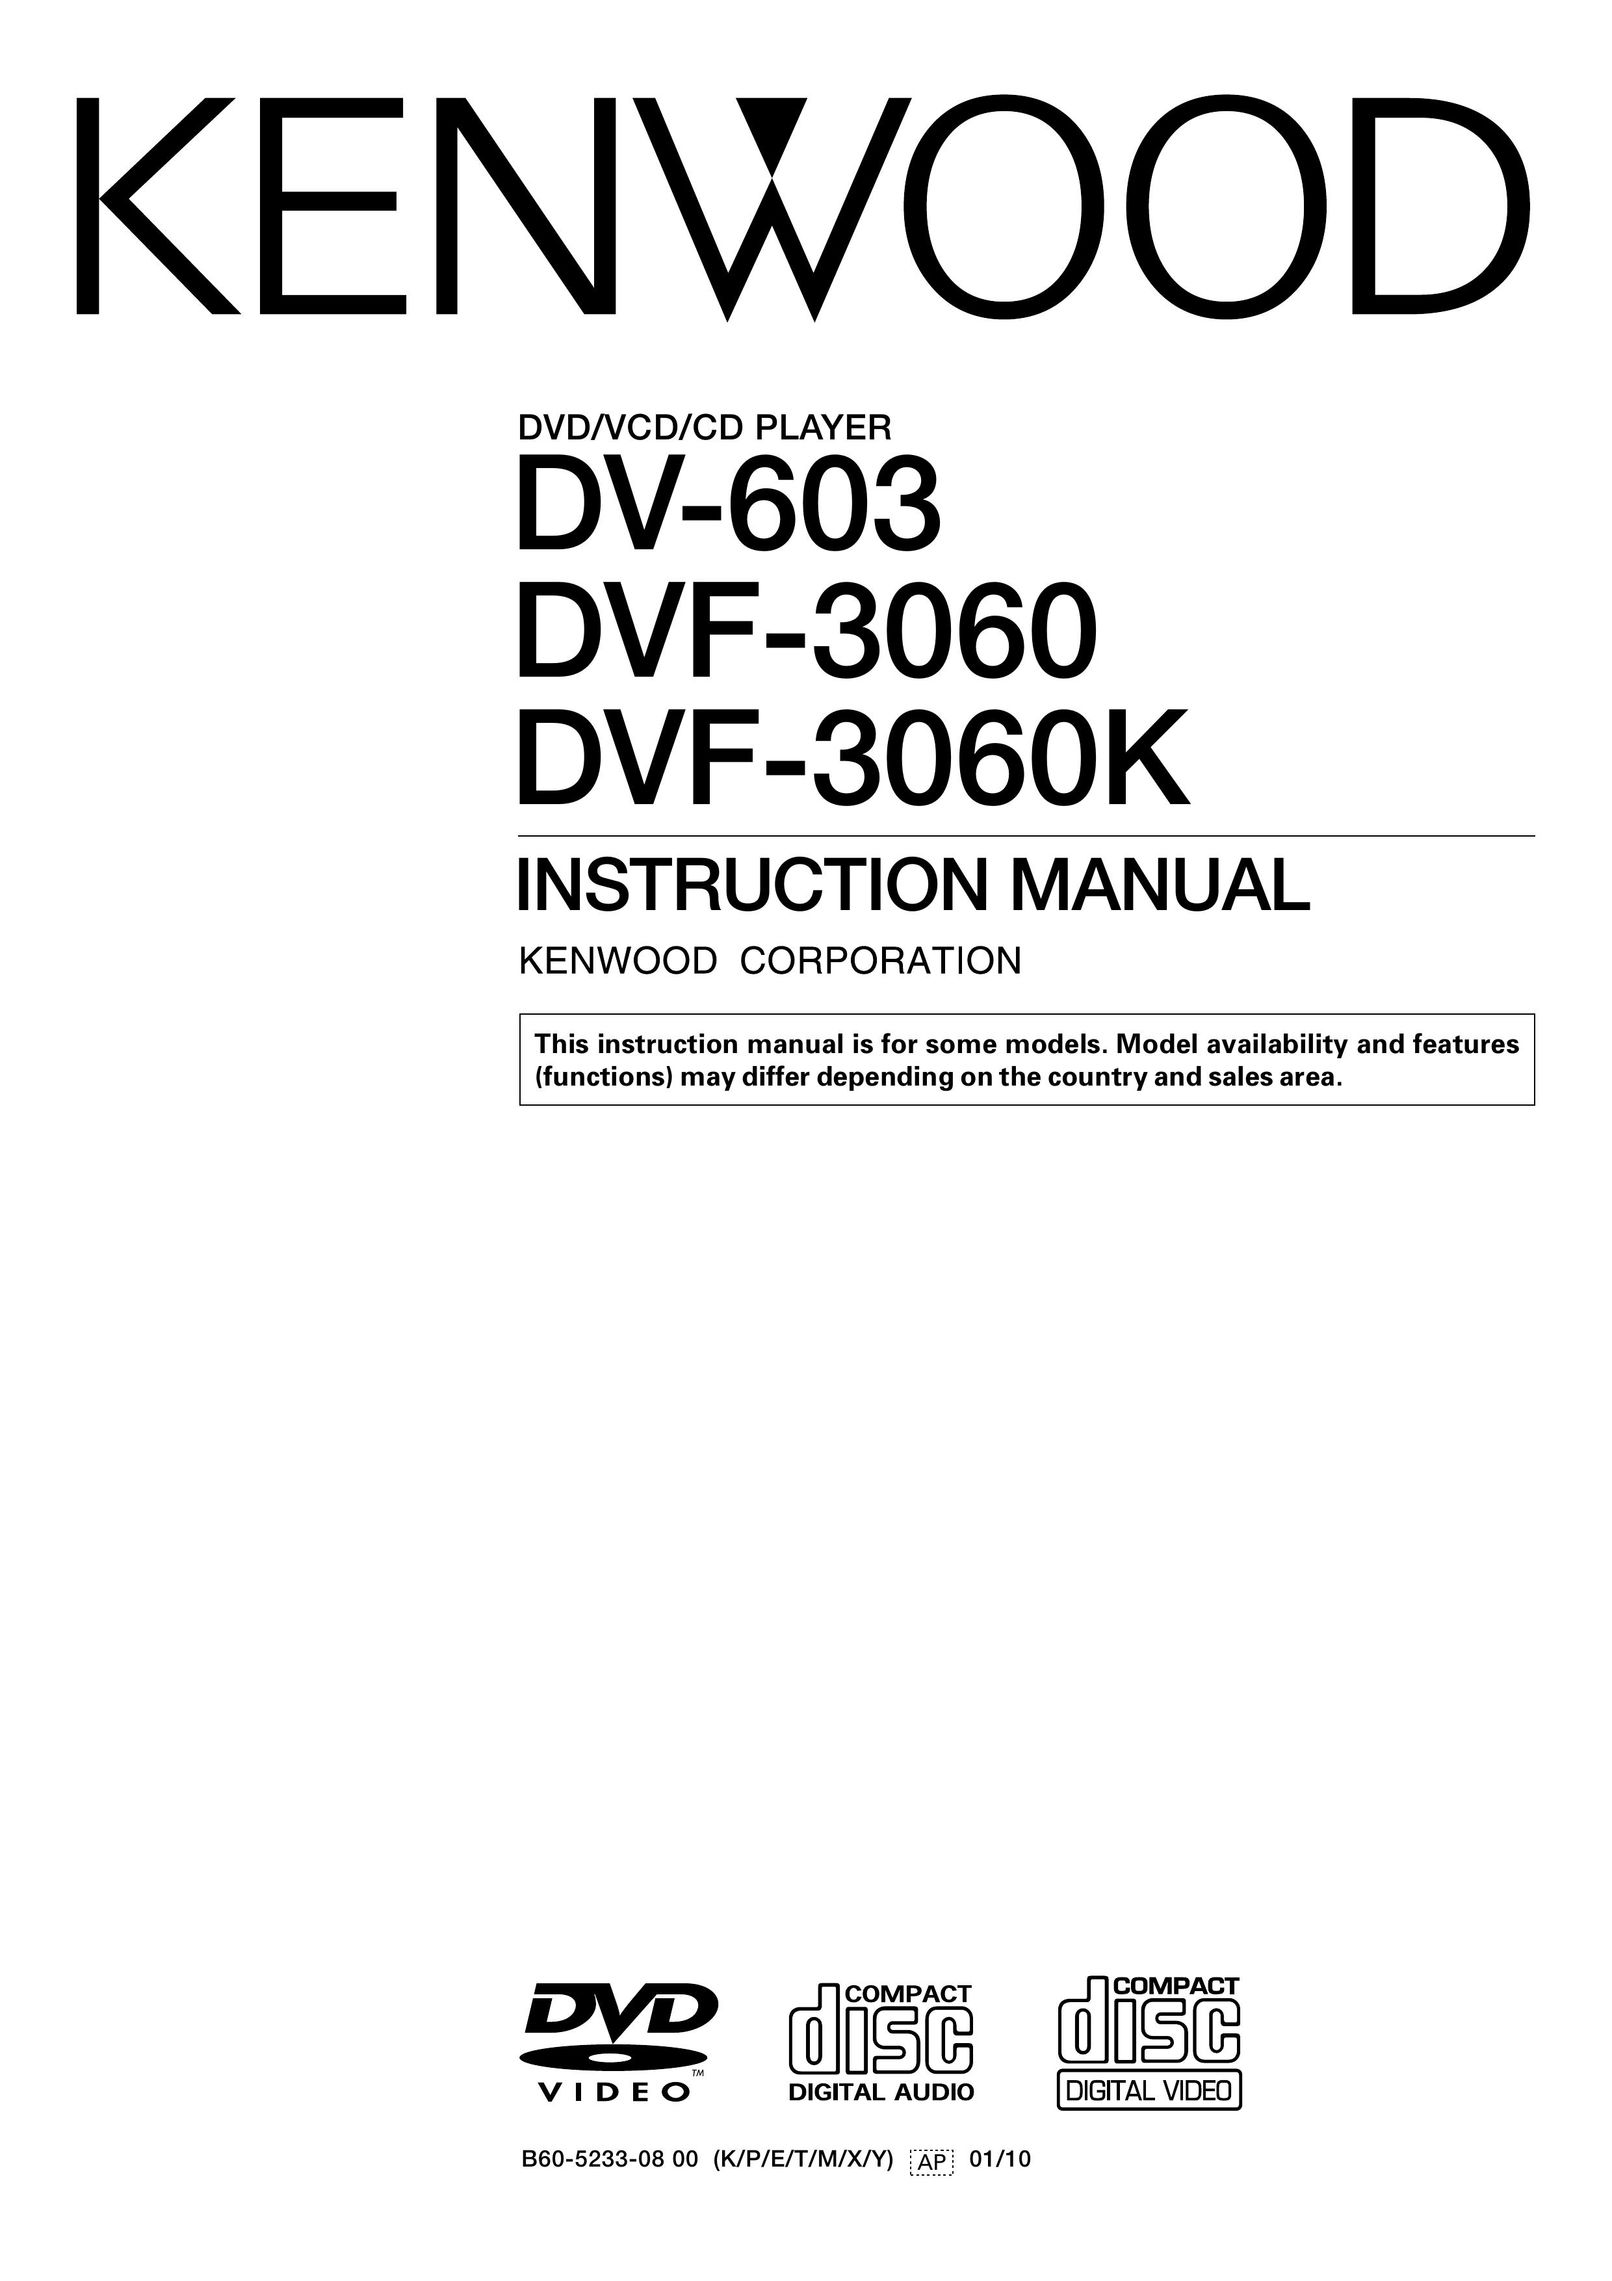 Kenwood DV-603 DVD Player User Manual